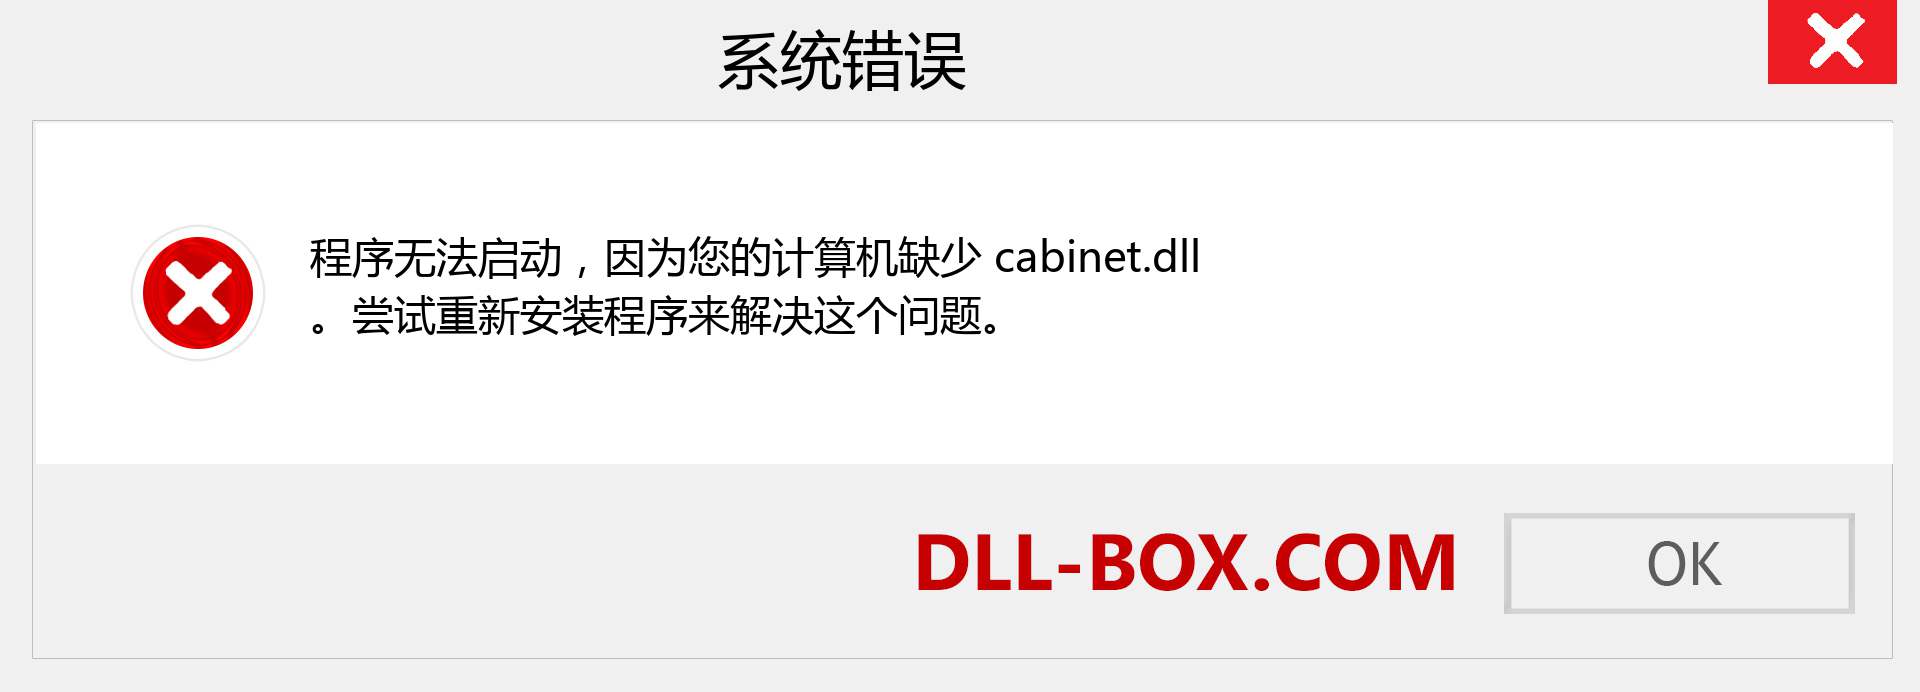 cabinet.dll 文件丢失？。 适用于 Windows 7、8、10 的下载 - 修复 Windows、照片、图像上的 cabinet dll 丢失错误